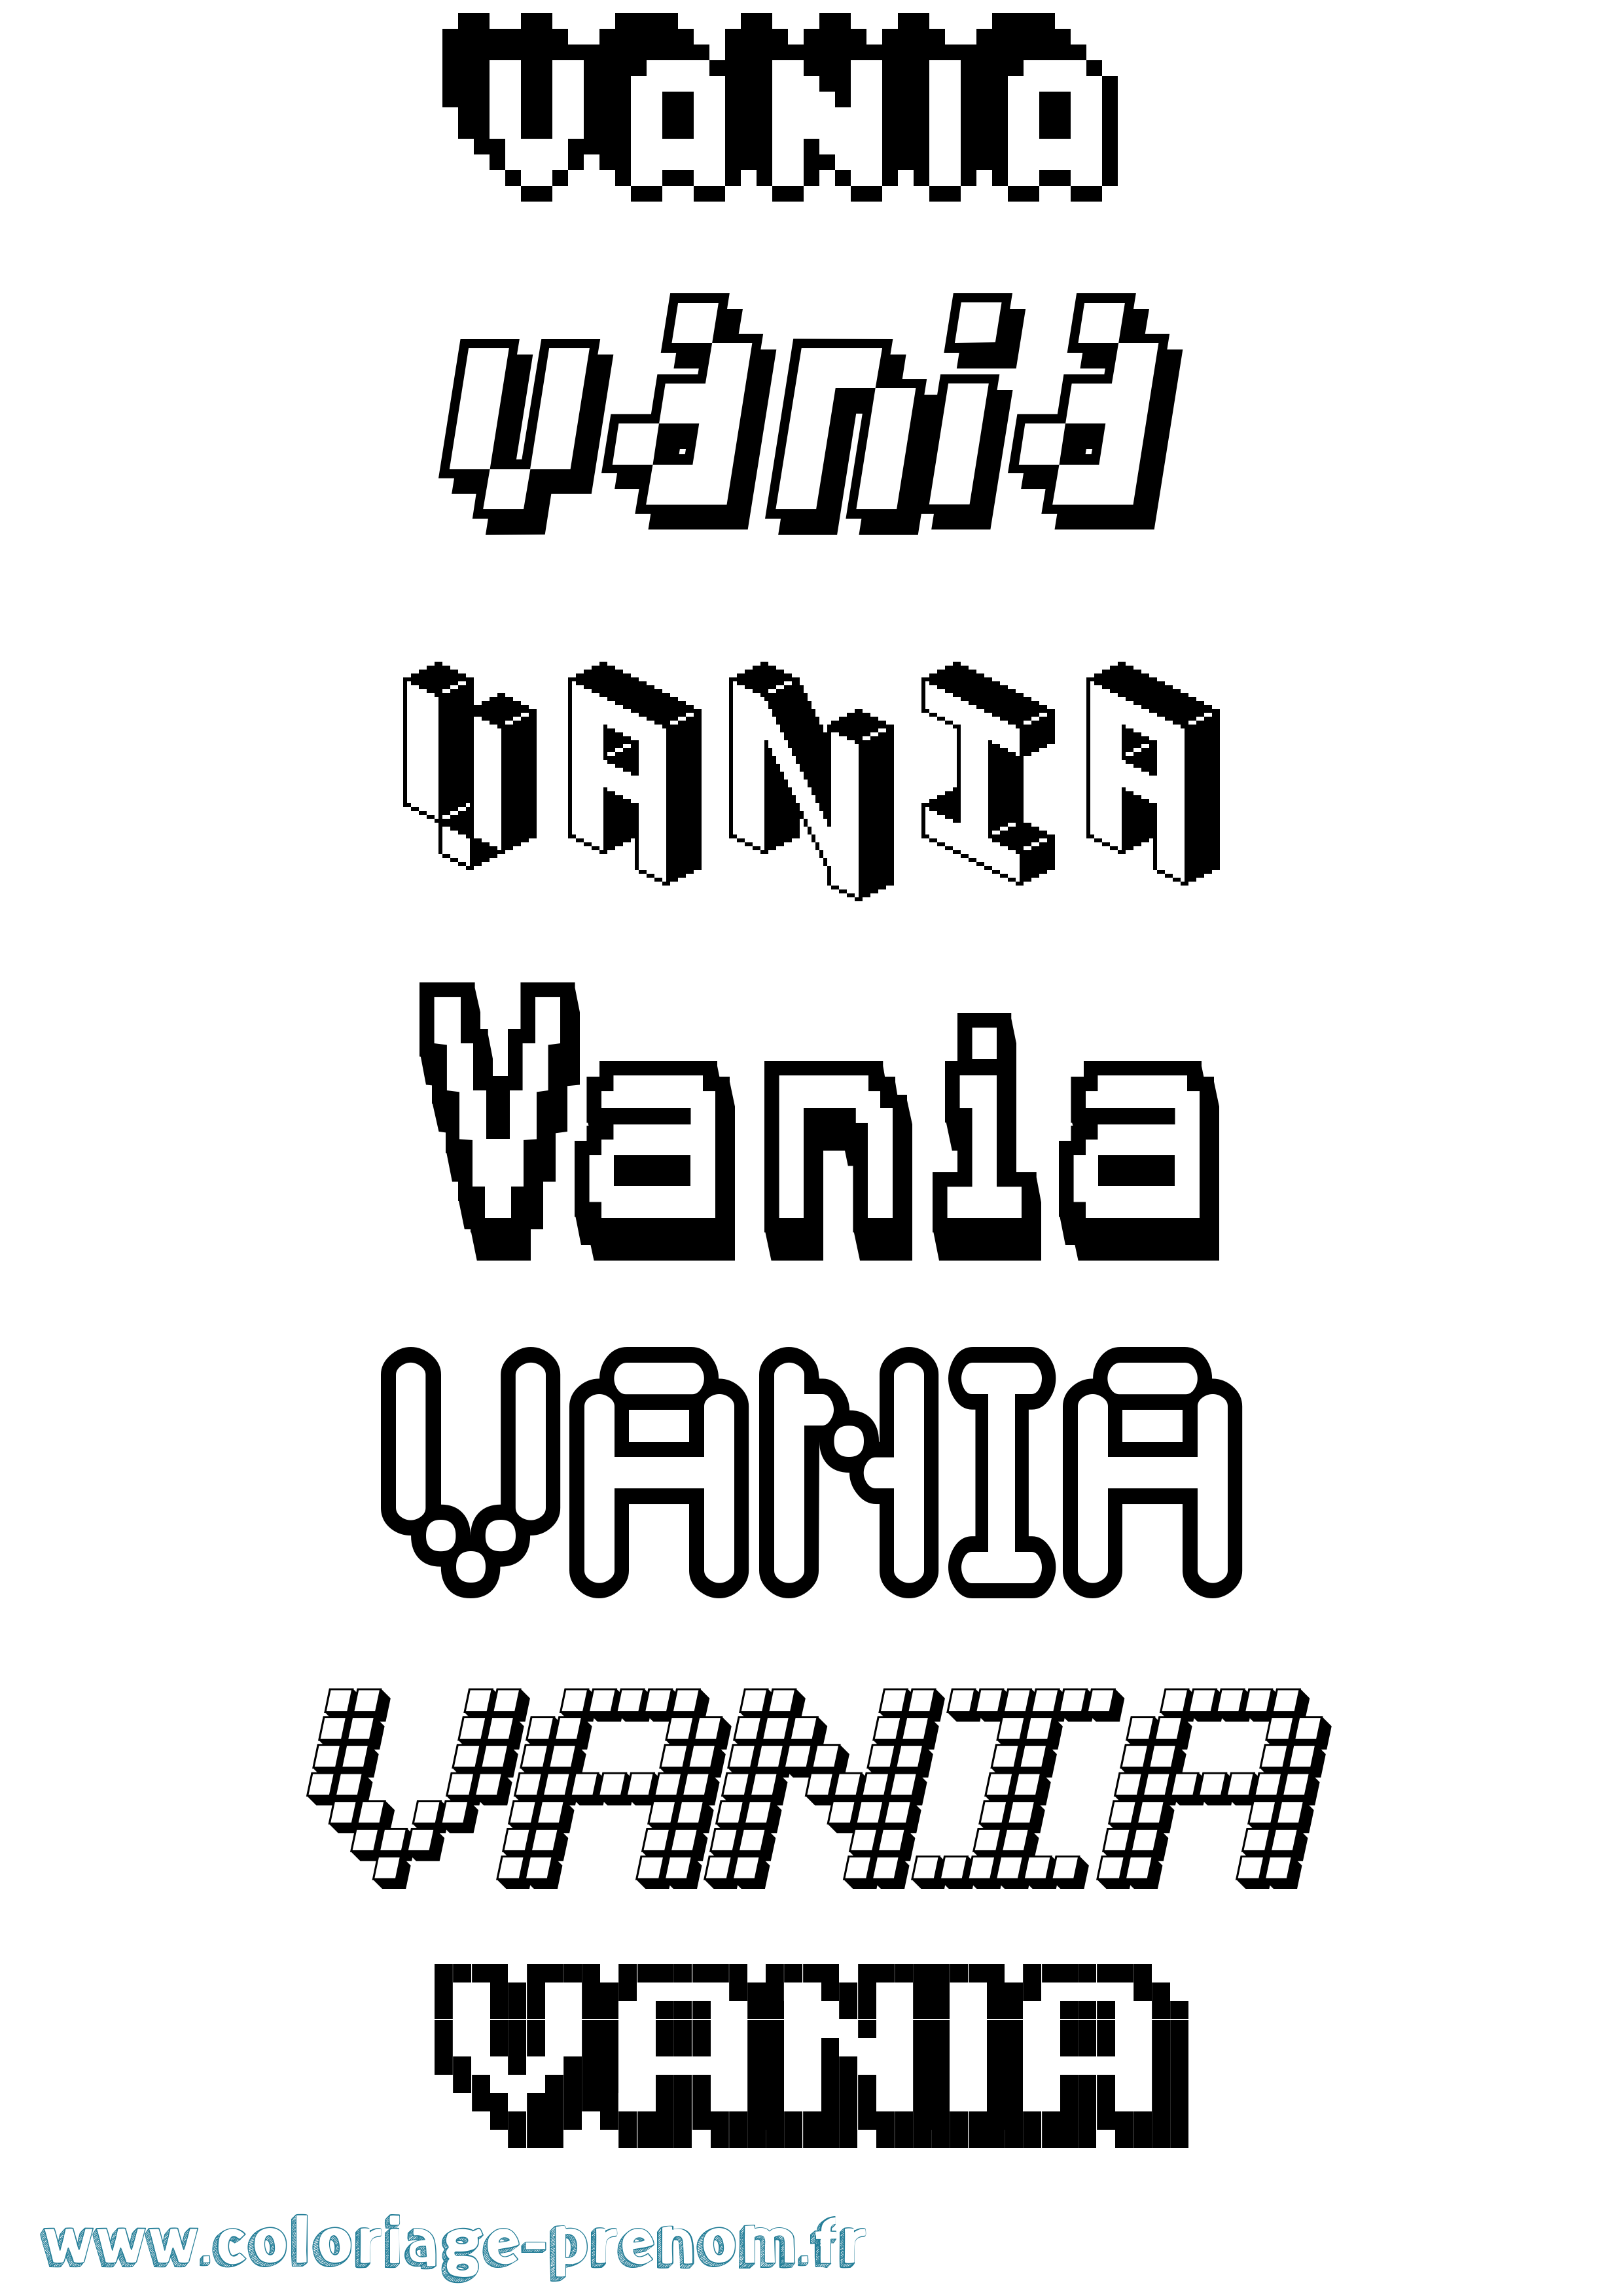 Coloriage prénom Vania Pixel